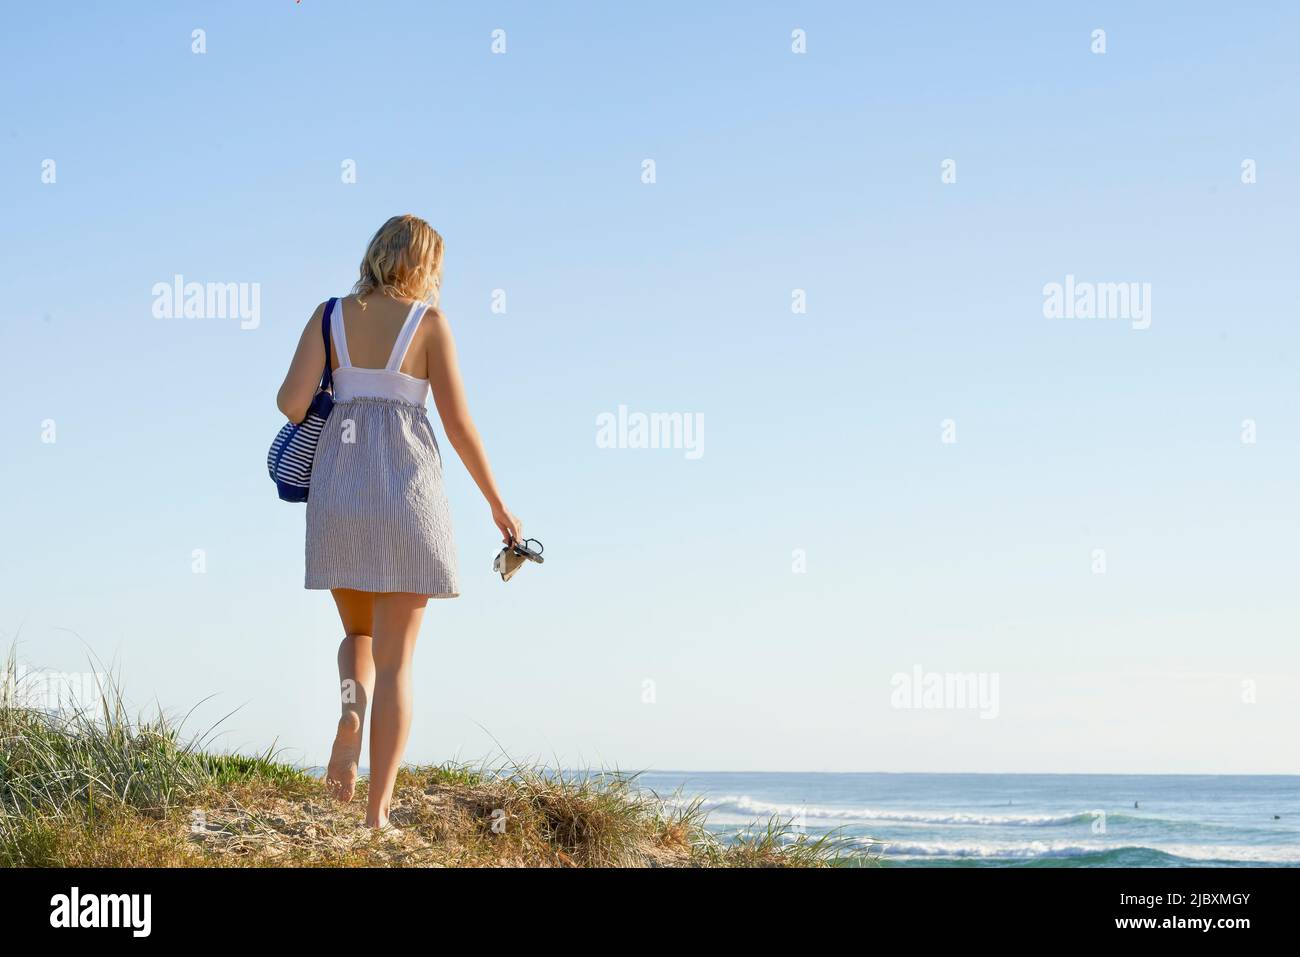 Rückansicht einer jungen Frau, die ihre Tasche und Schuhe trägt und am Strand entlang einer Sandküste läuft Stockfoto